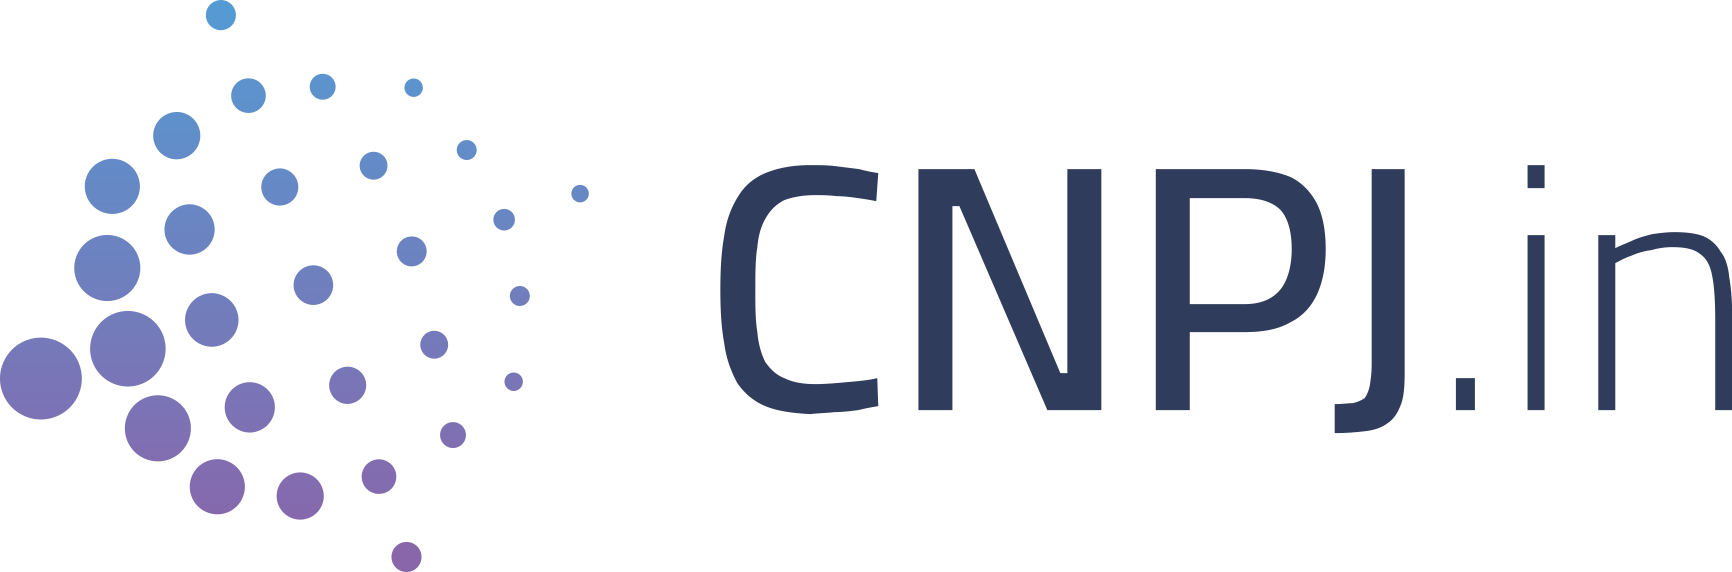 Logo CNPJ.in